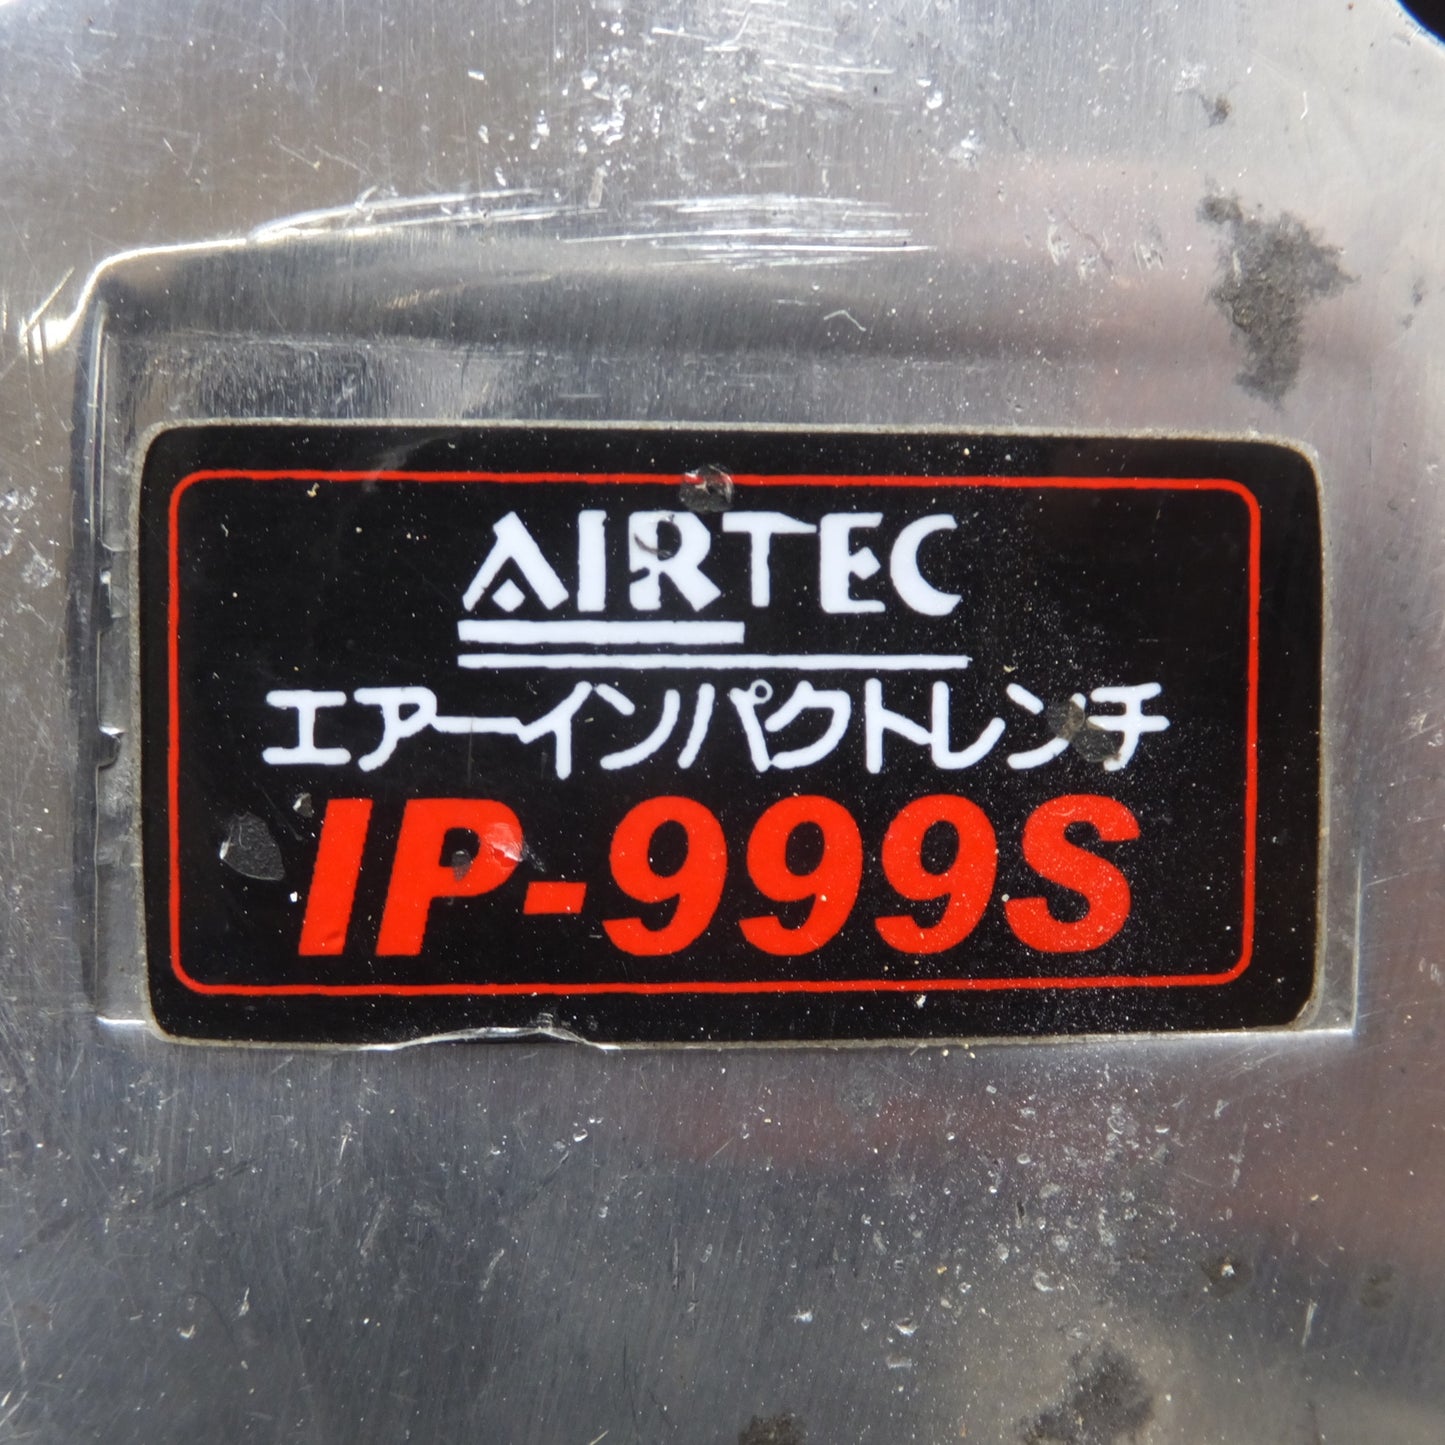 [送料無料] ★ナカトミ AIRTEC エアーインパクトレンチ AIR IMPACT WRENCH IP-999S★